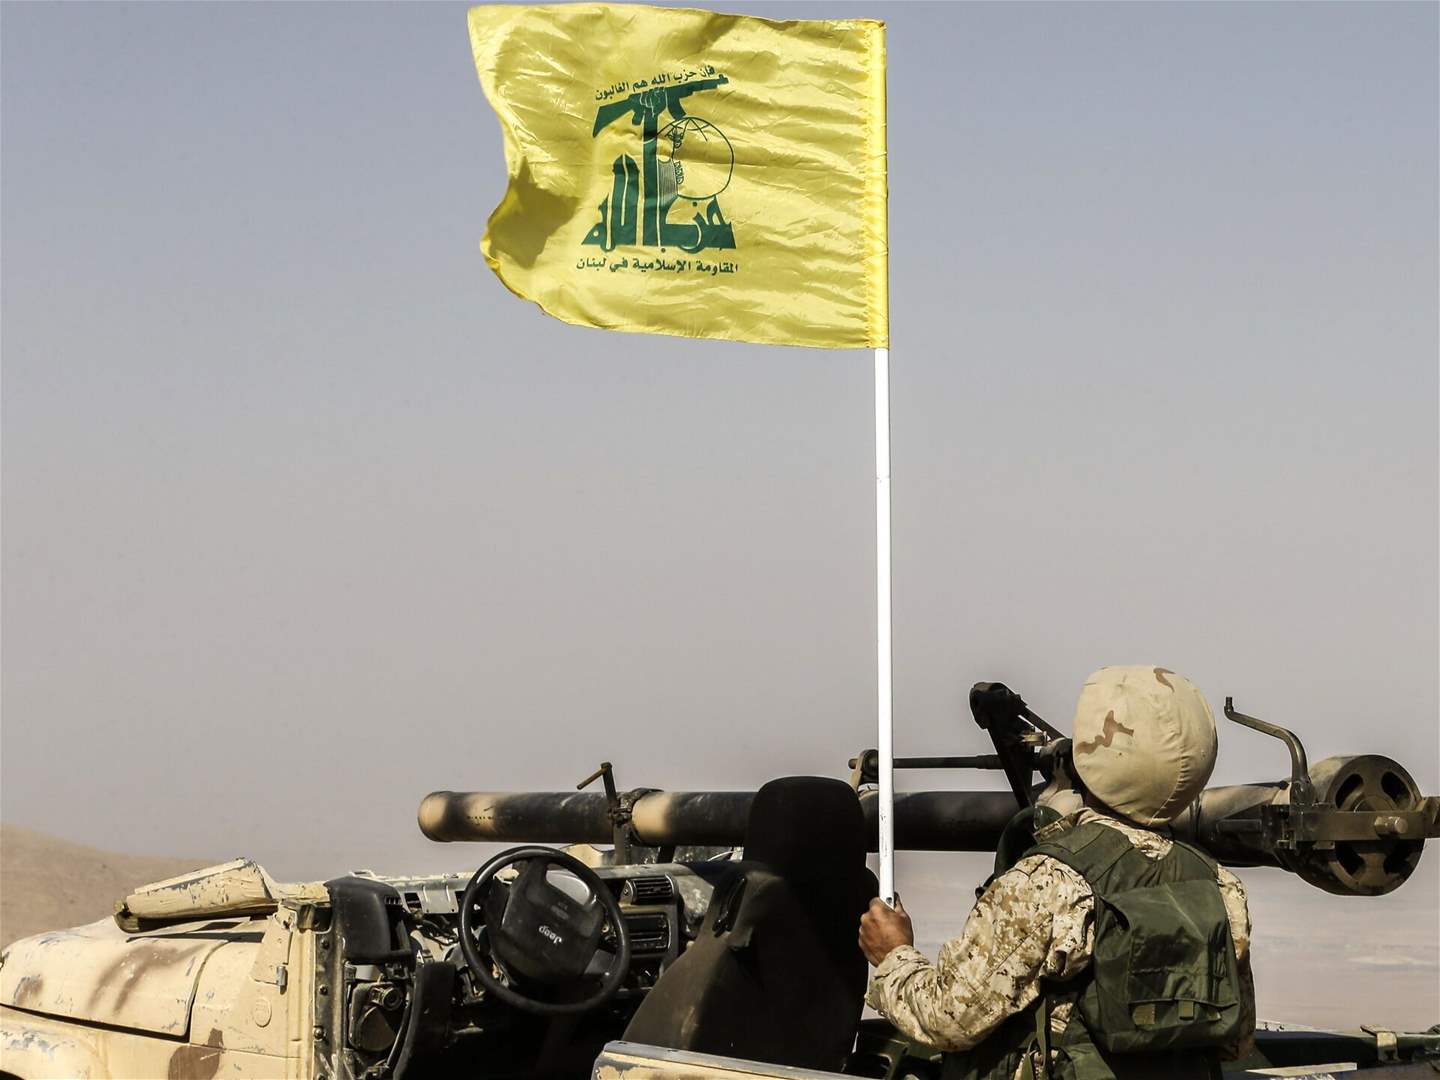 حزب الله: إستهدفنا ‏منظومة التجسس في موقع العباد بالأسلحة المناسبة وتمت إصابتها إصابة مباشرة